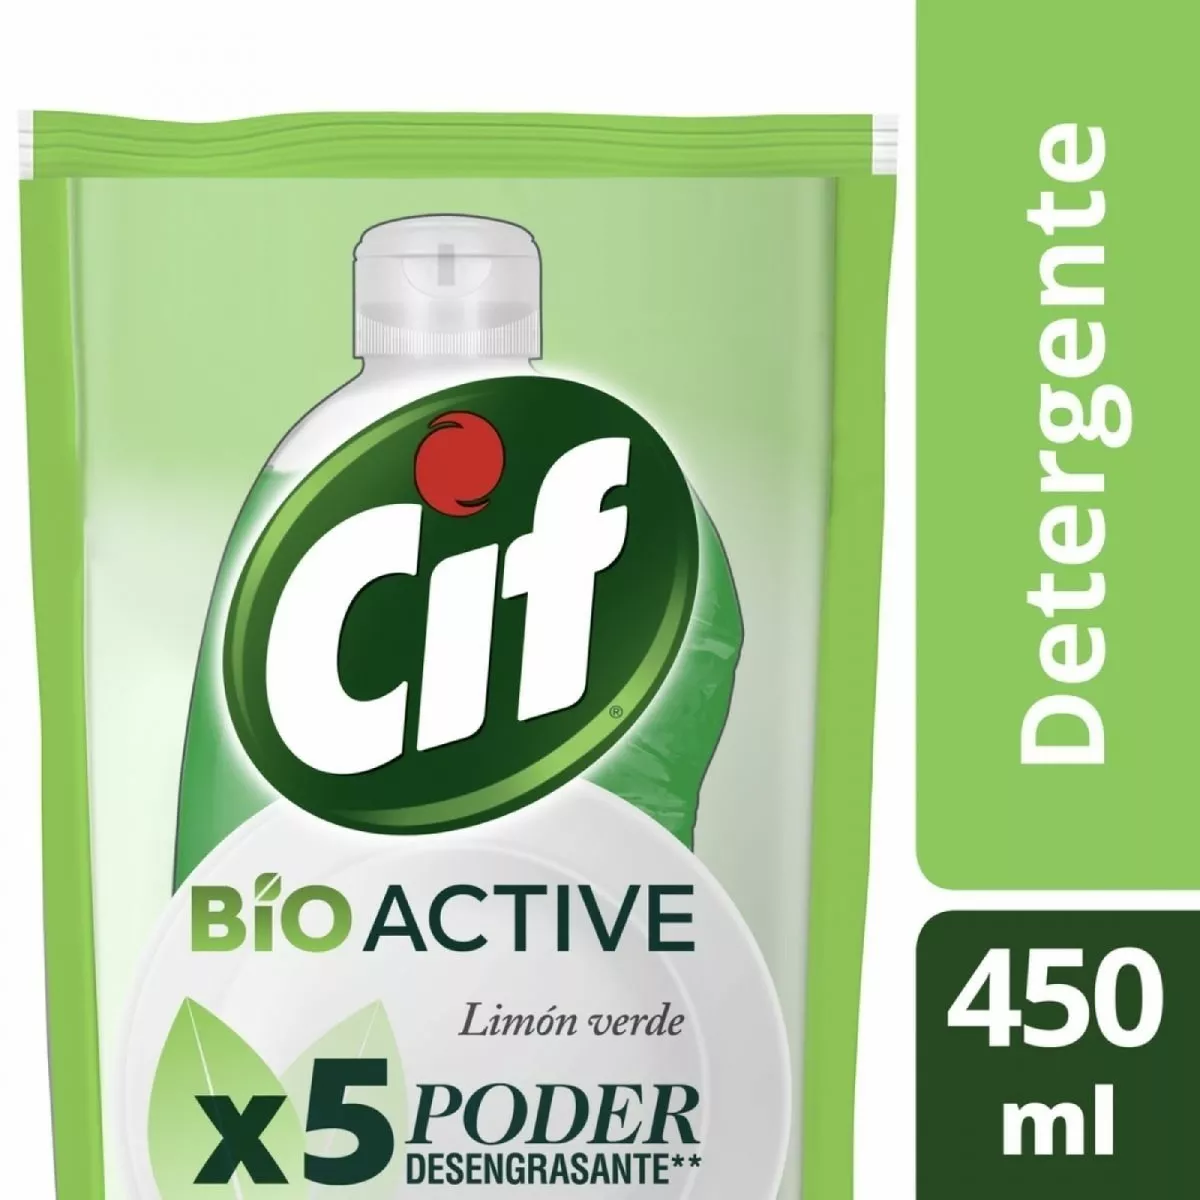 Detergente Cif Lima Bio Active Repuesto Económico X 450 Ml